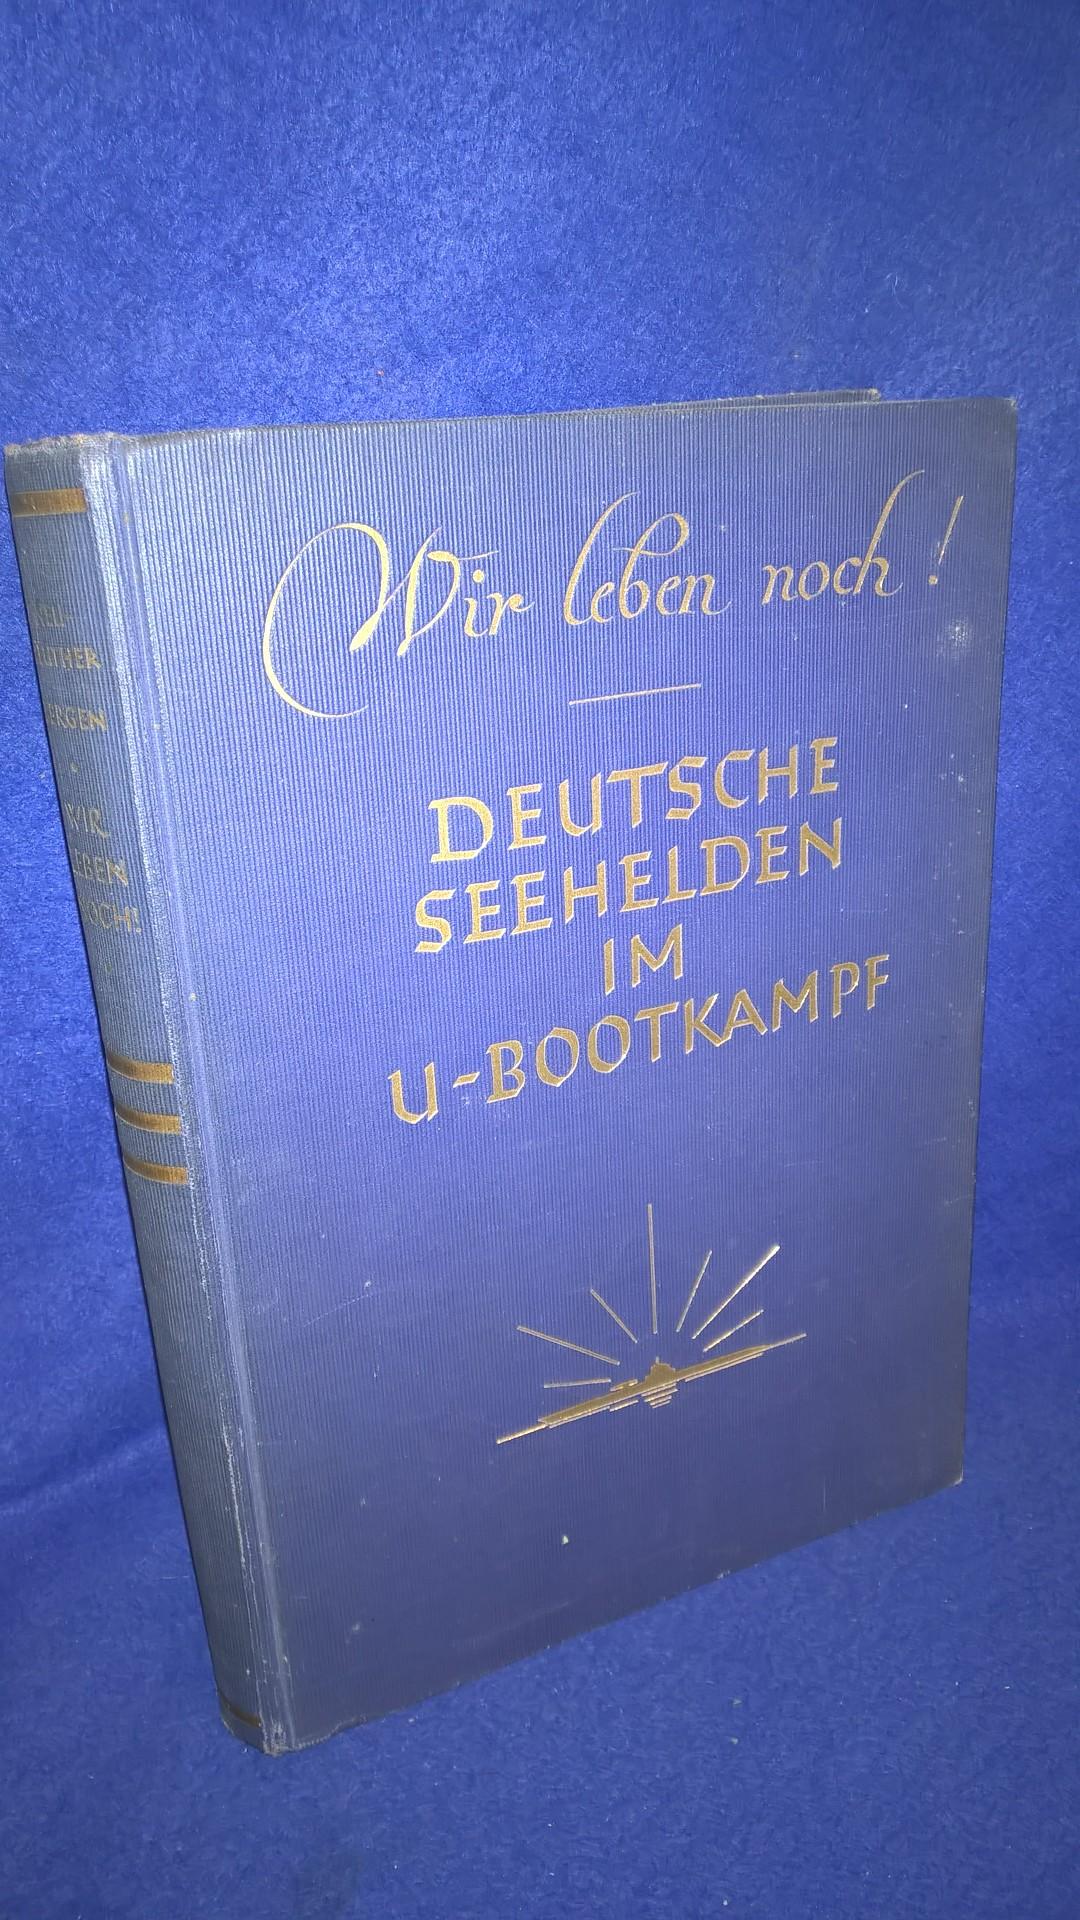 Wir leben noch! Deutsche Seehelden im U-Bootkampf. 26 Erlebnisse von Angehörigen der U-Boot-Kameradschaft München. 